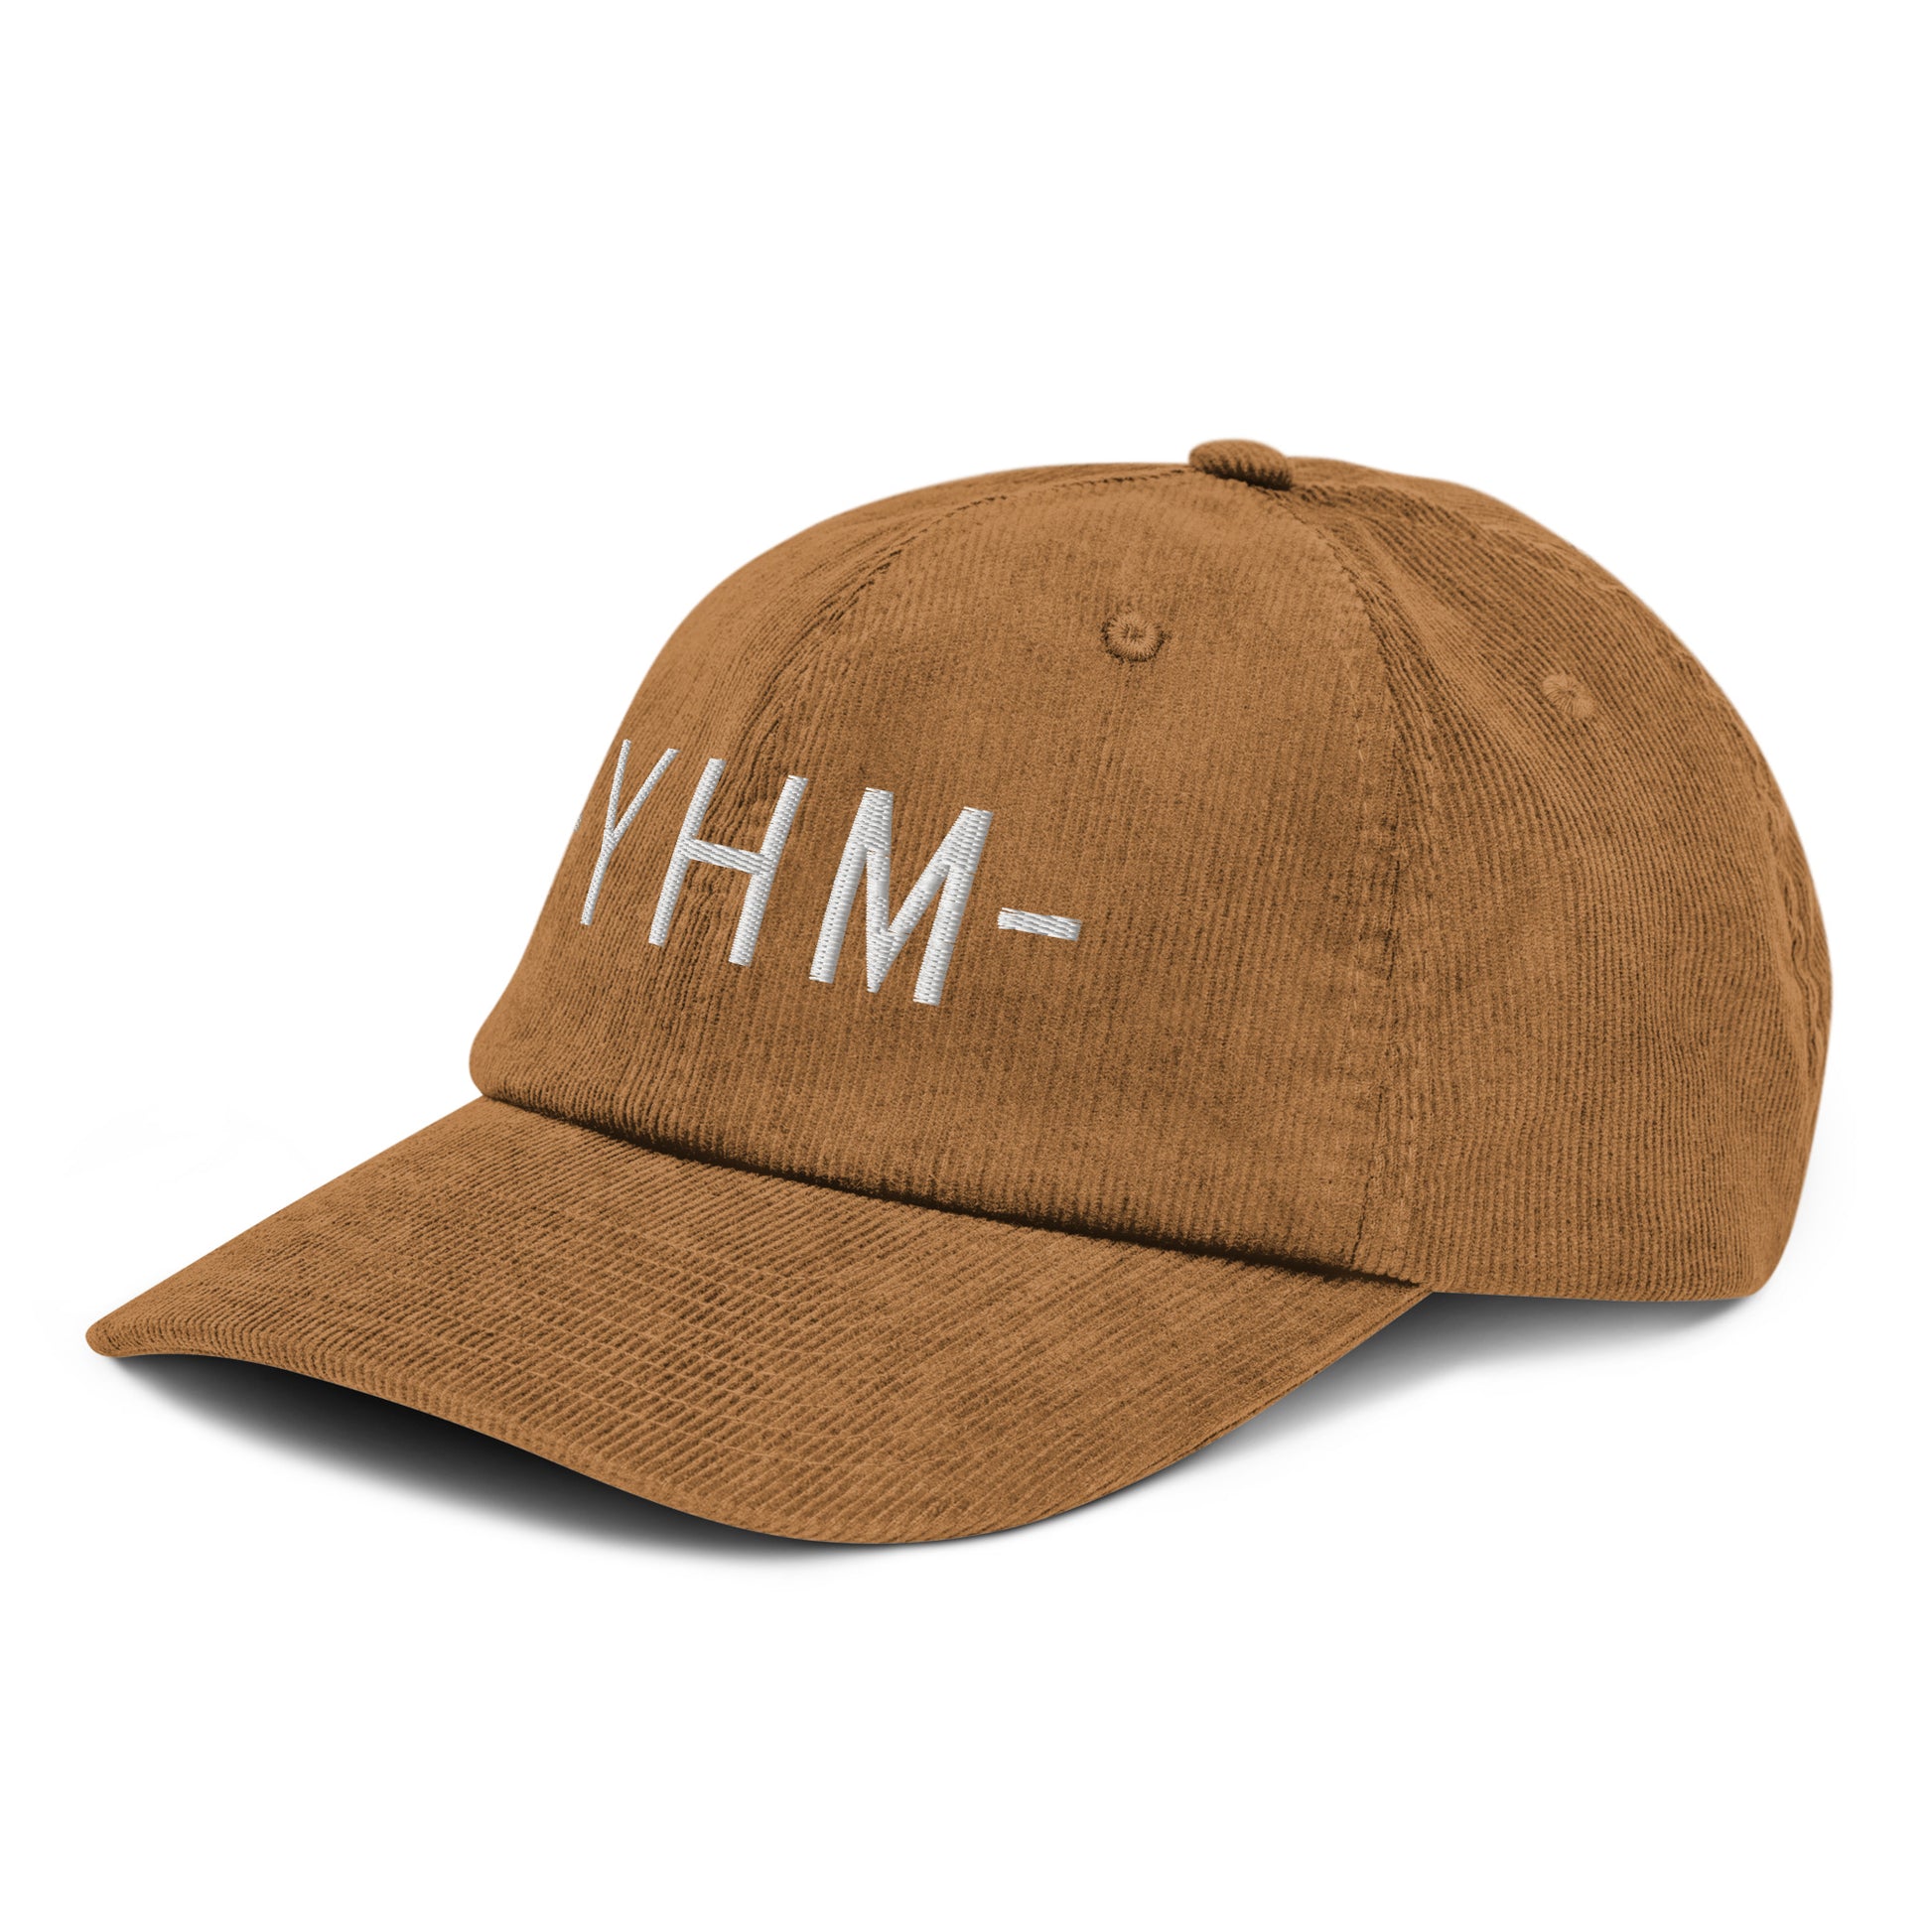 Souvenir Corduroy Hat - White • YHM Hamilton • YHM Designs - Image 19